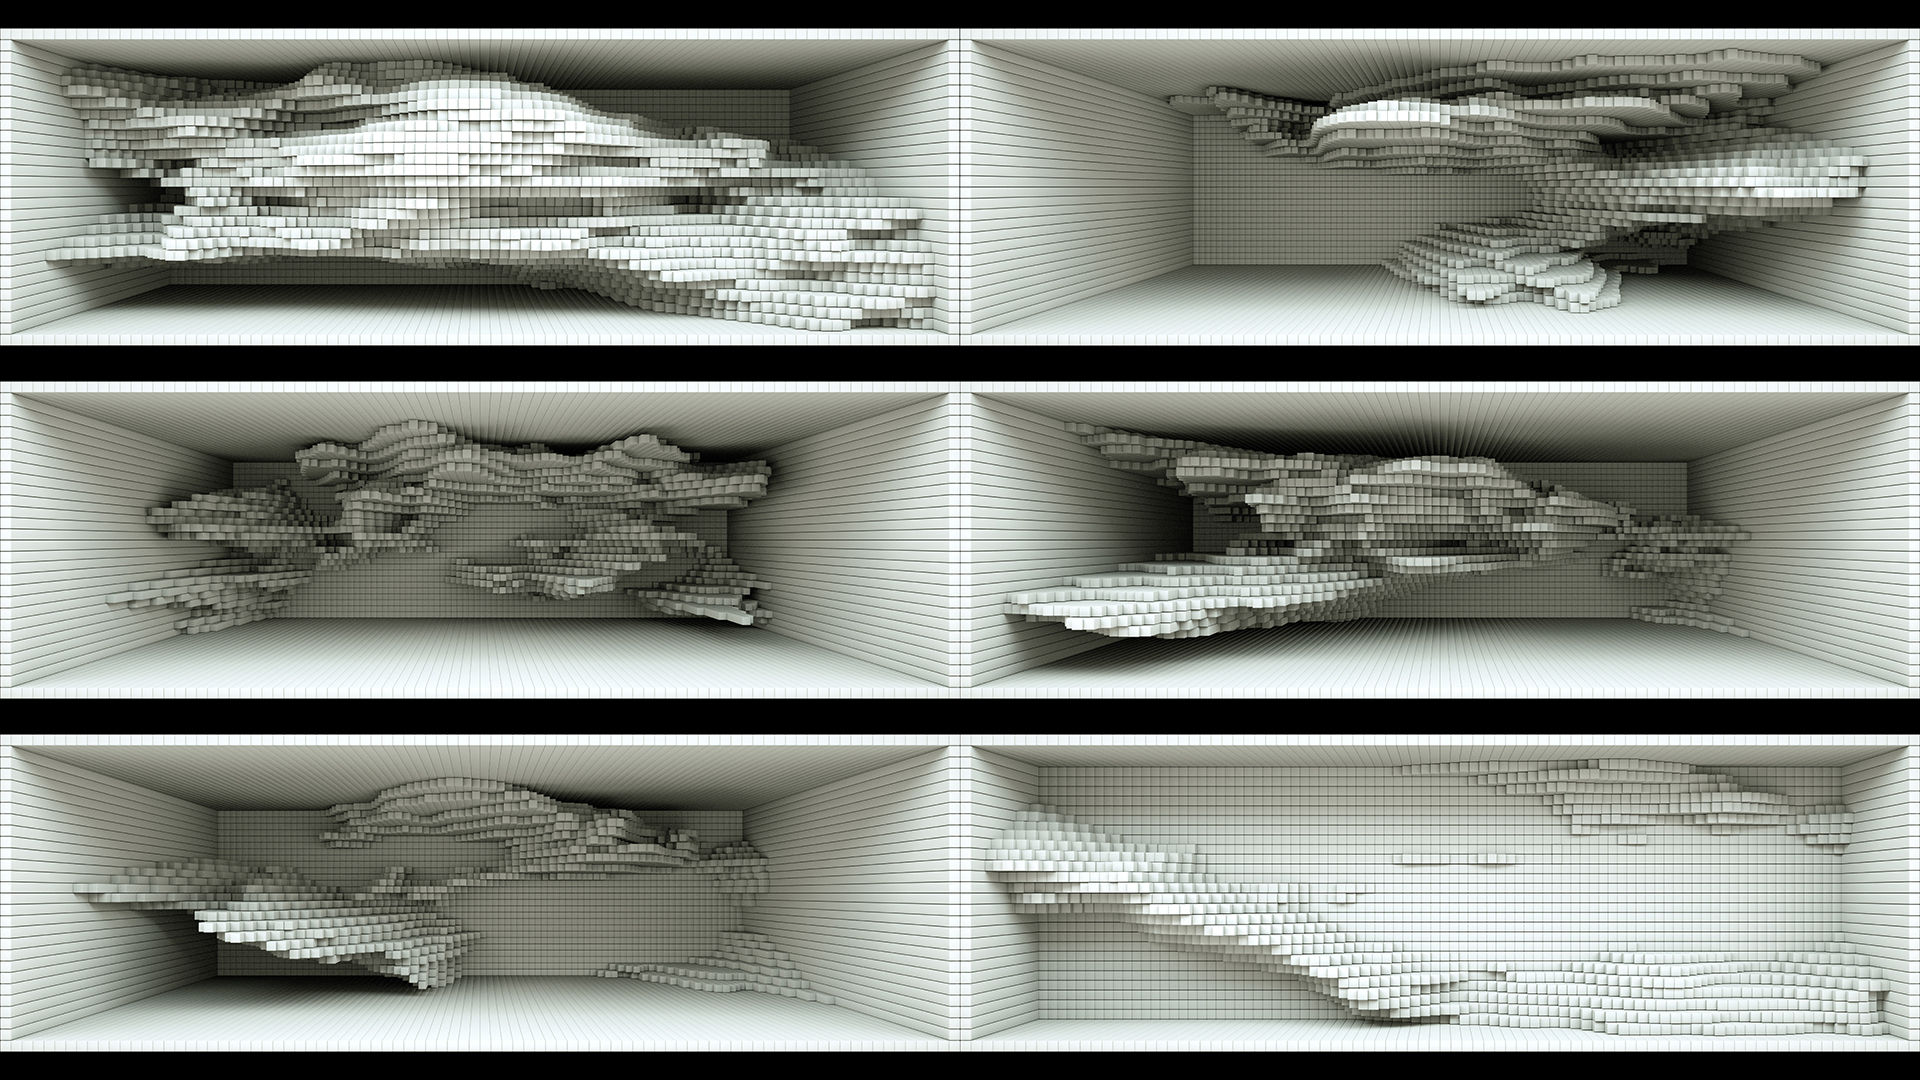 【裸眼3d】视觉空间凹凸起伏变化方块墙体_6000x2000_高清视频素材